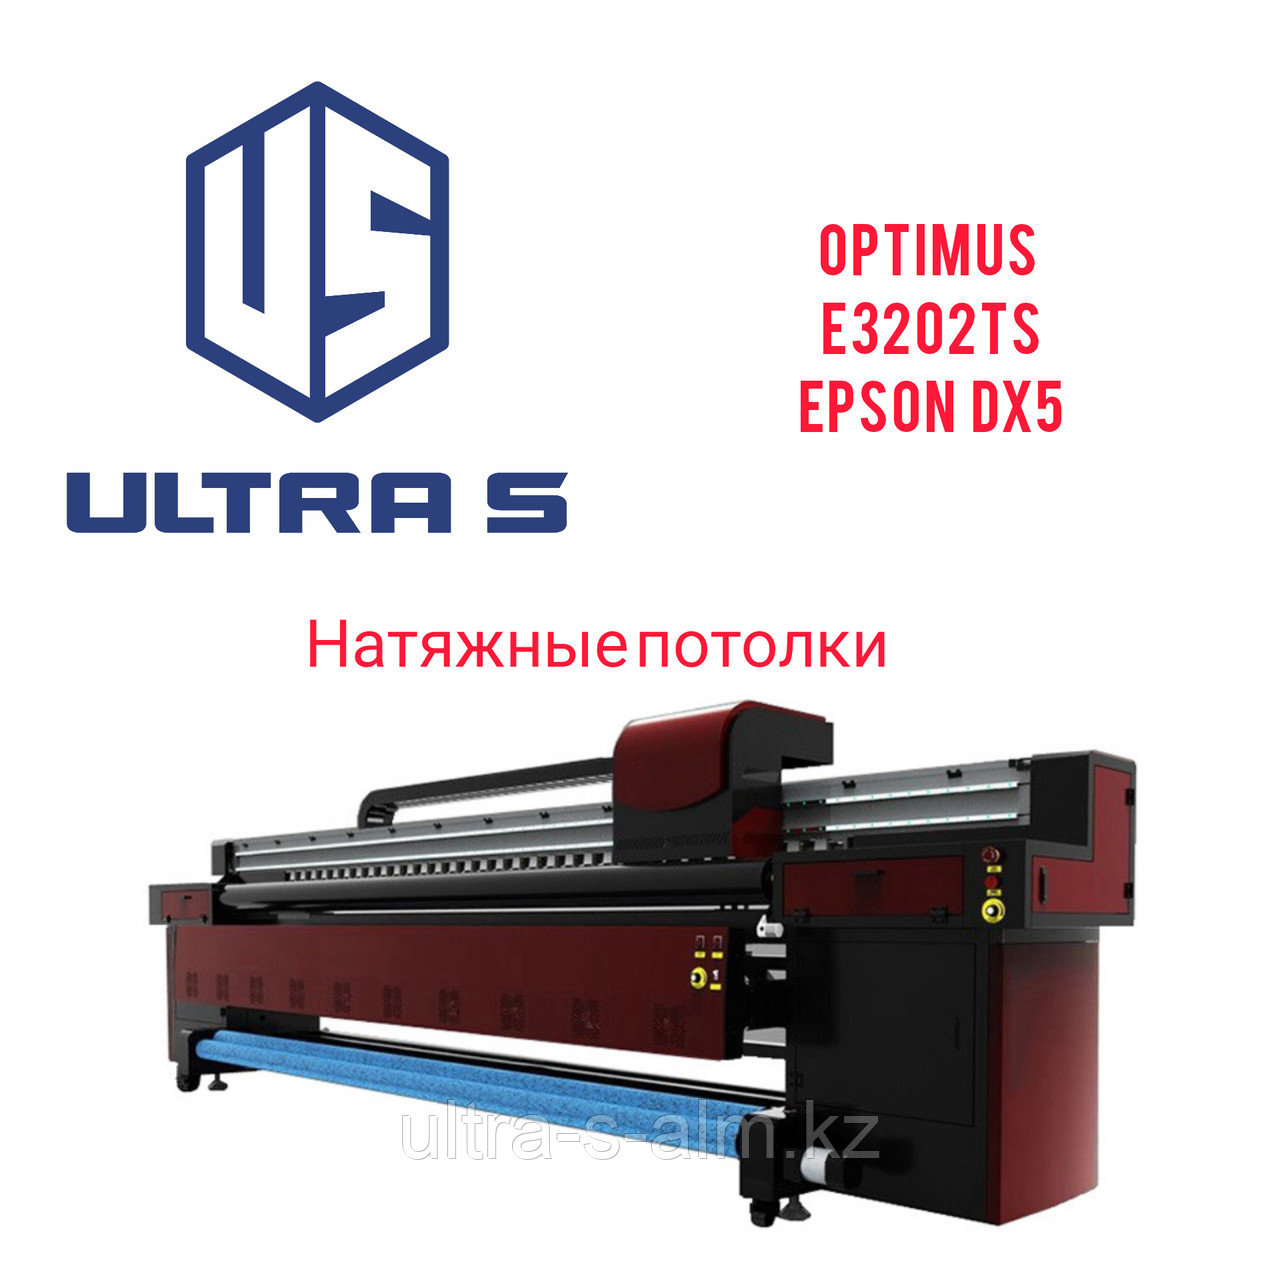 Широкоформатный принтер для натяжных потолков Optimus E3202TS